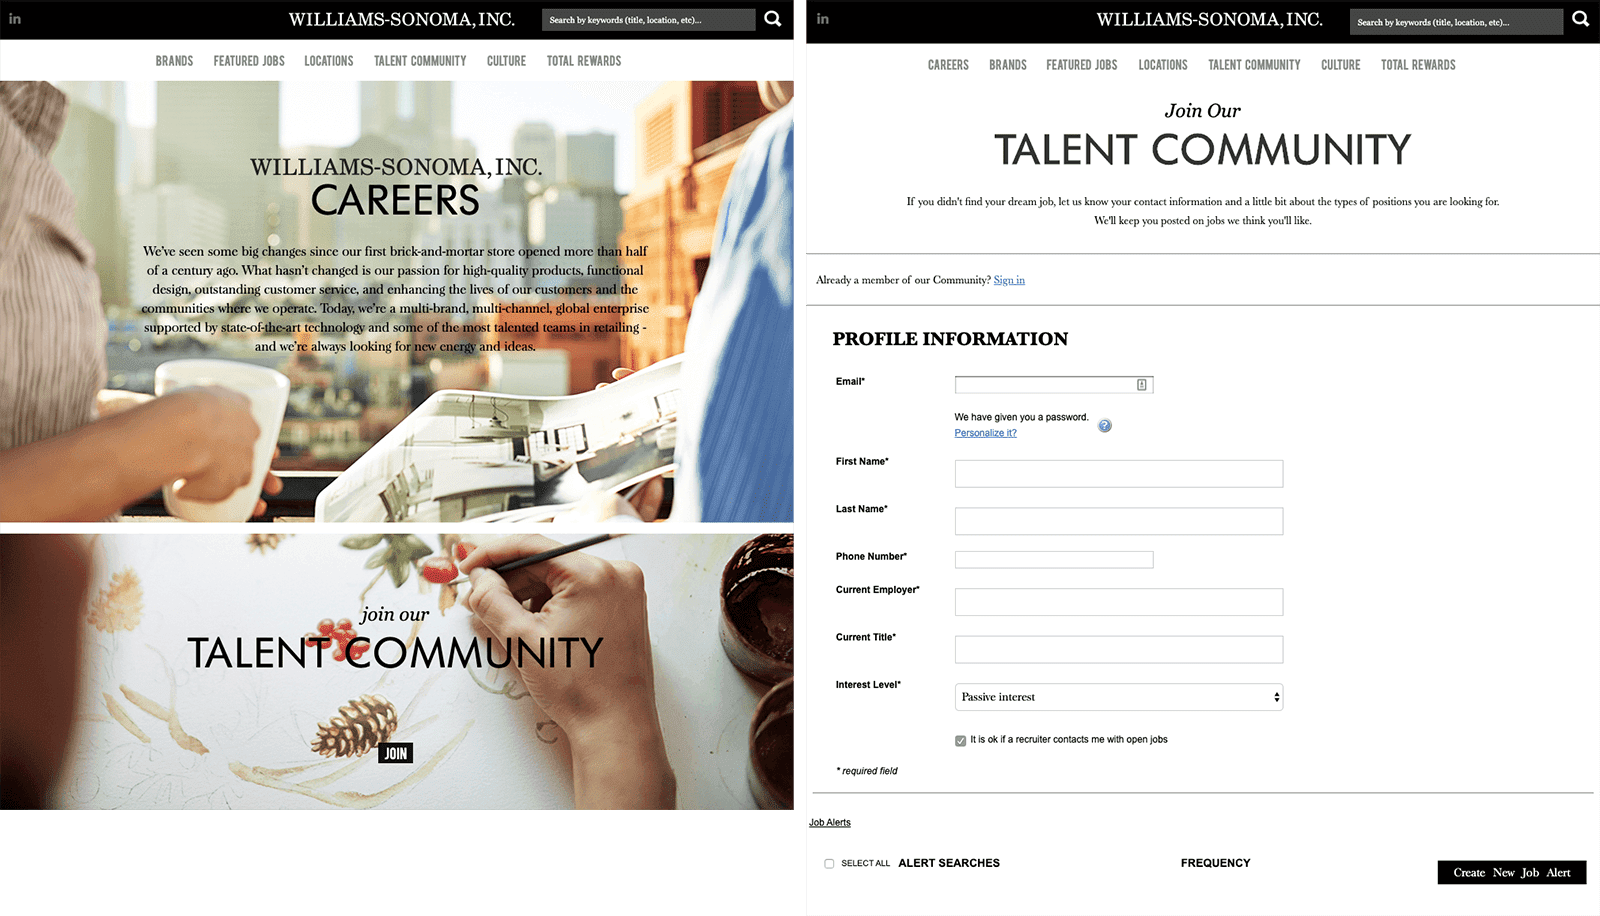 Williams Sonoma’s careers website